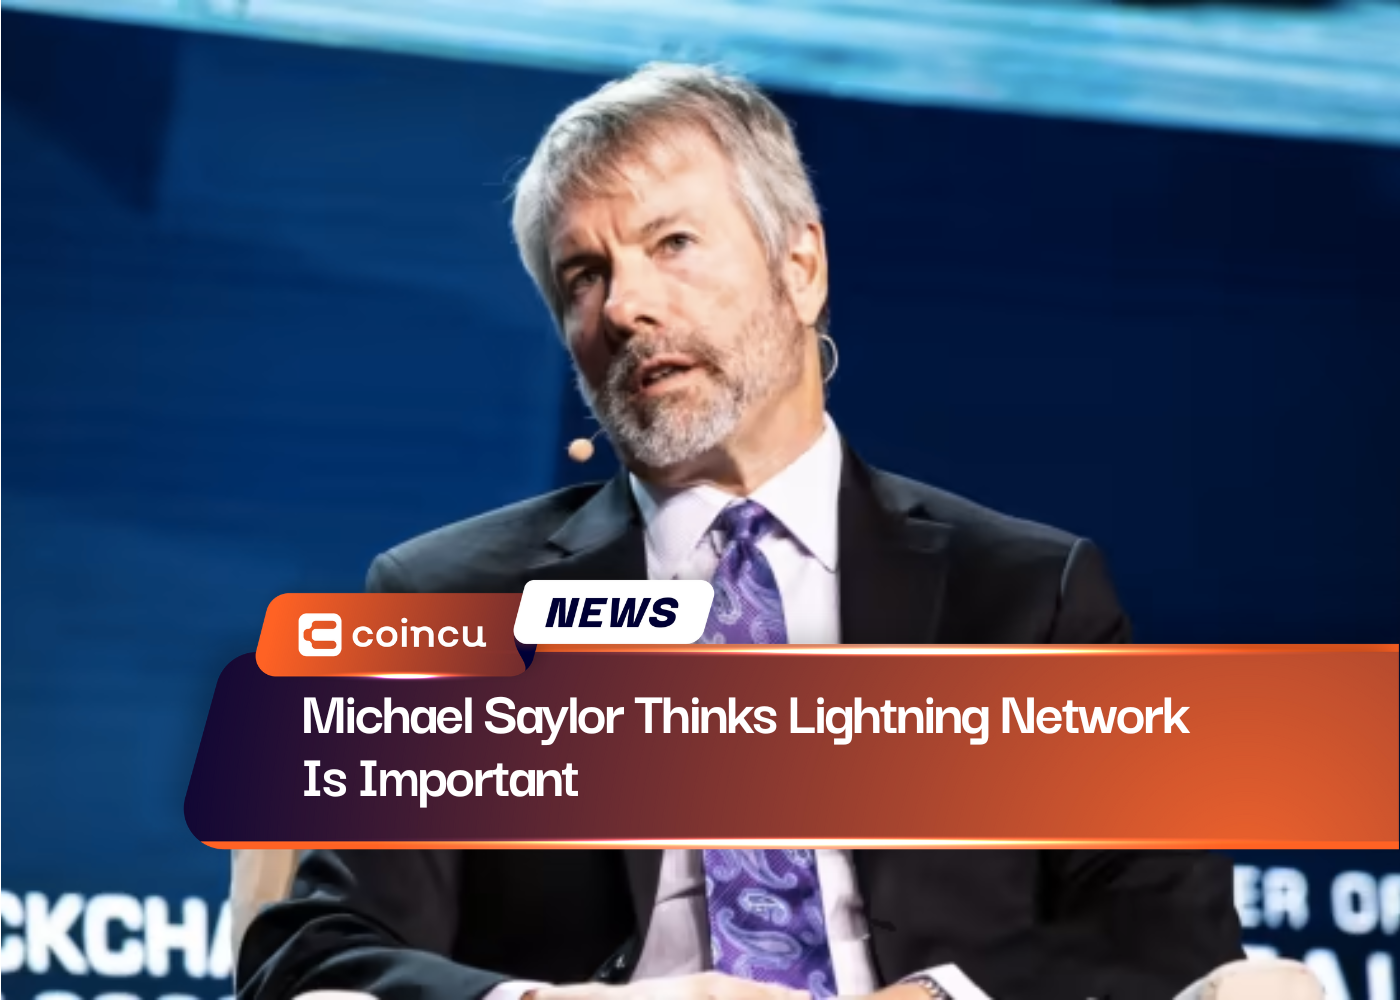 माइकल सैलर का मानना ​​है कि लाइटनिंग नेटवर्क महत्वपूर्ण है